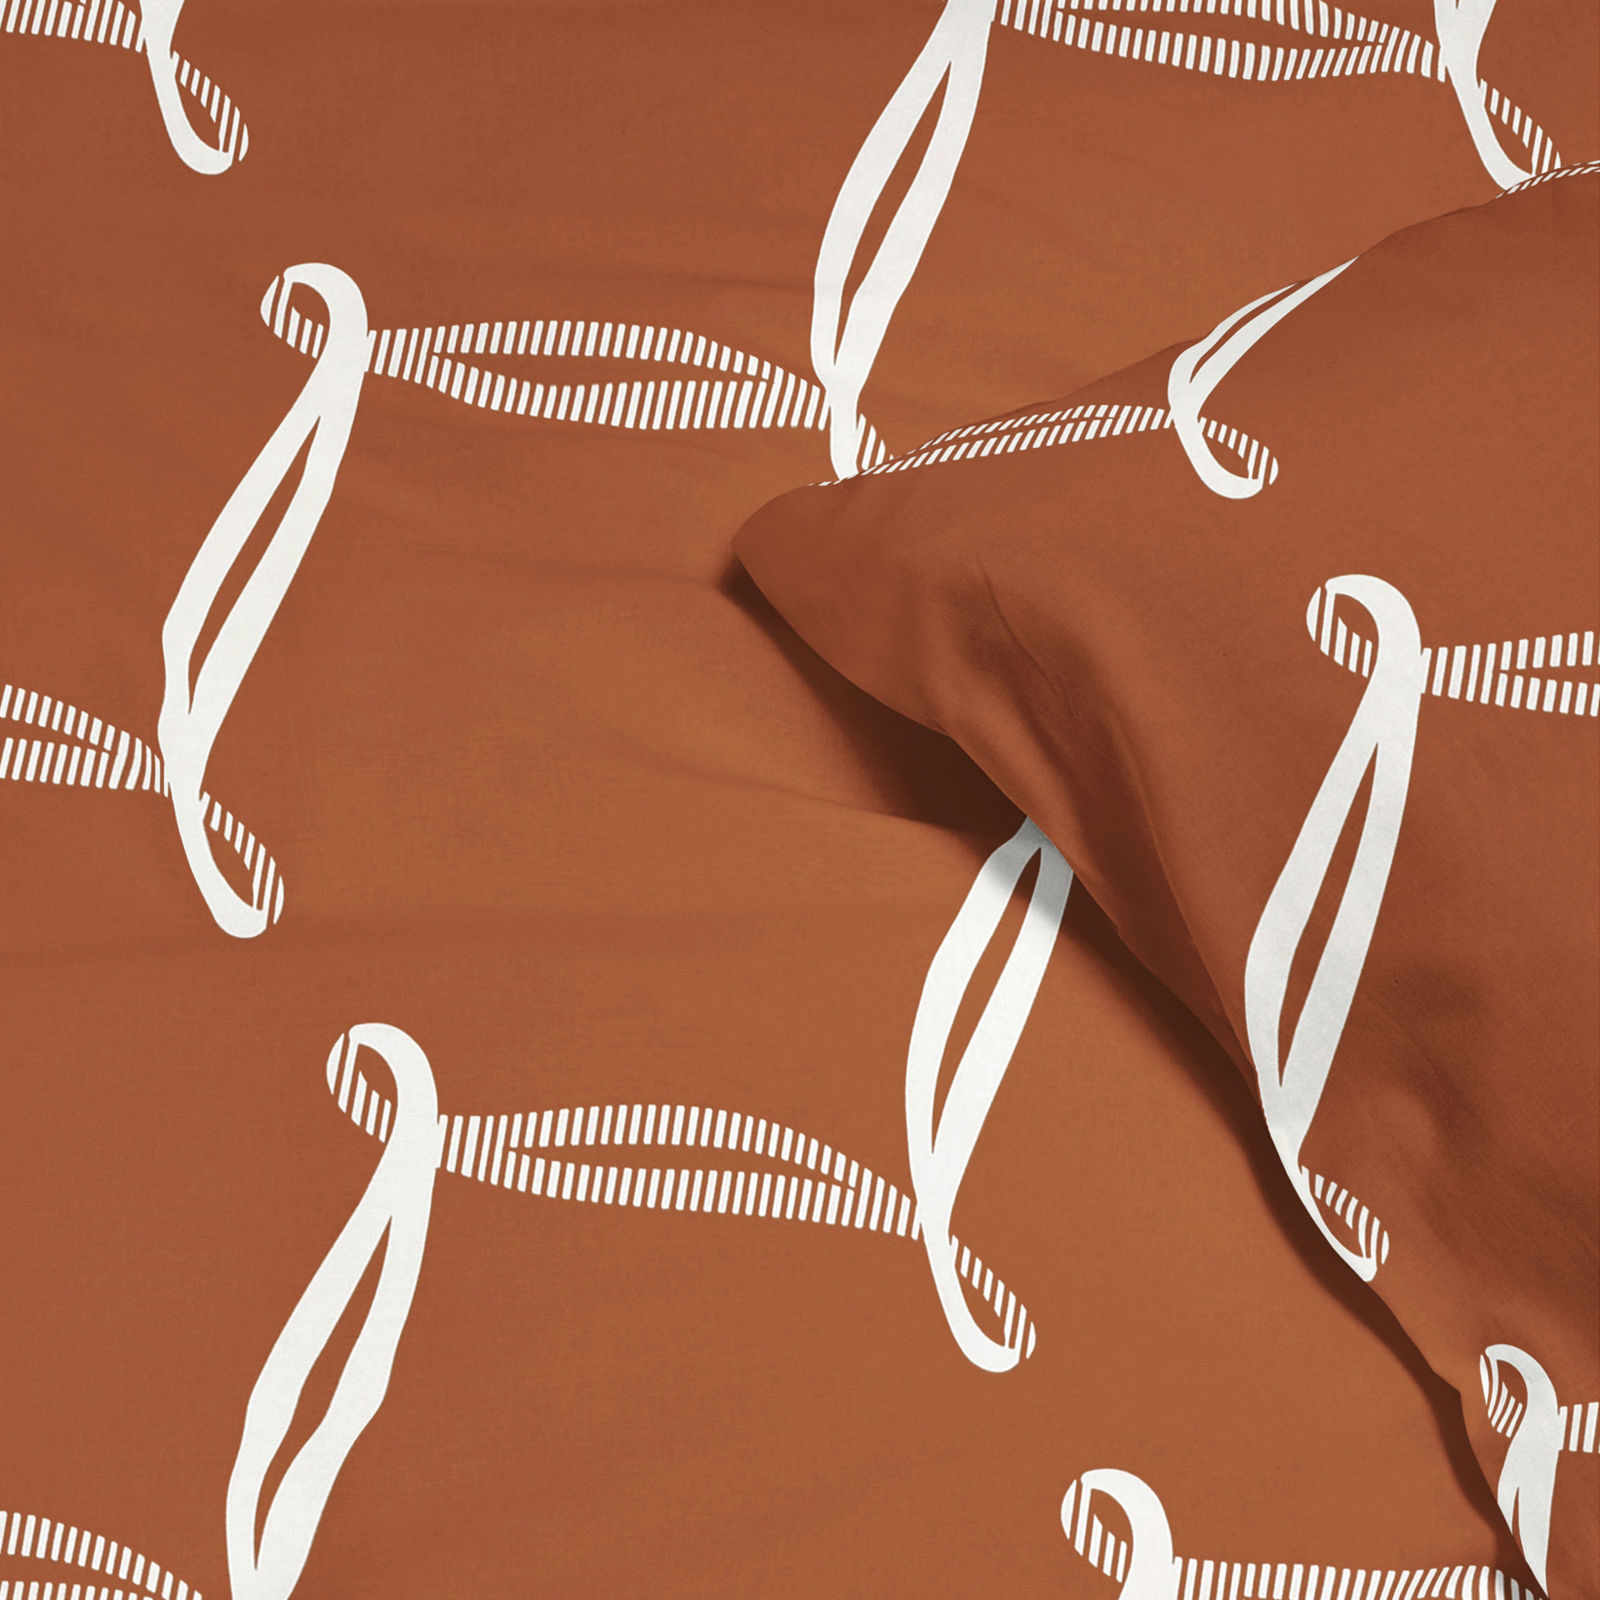 Lenjerie de pat din 100% bumbac Deluxe - design cu frânghii pe culoarea scorțișoară